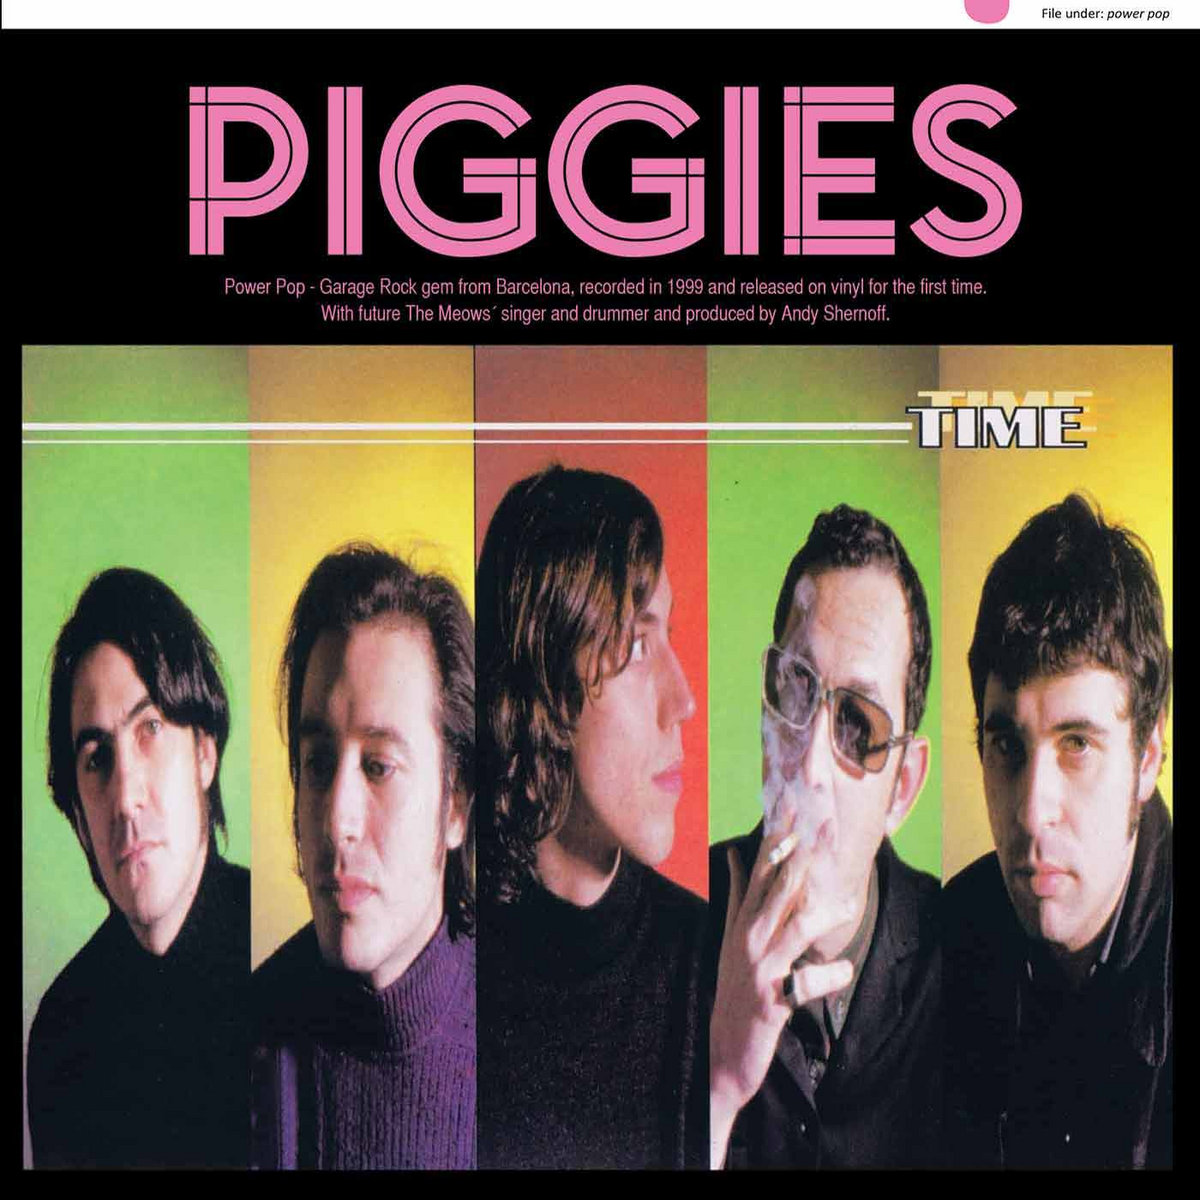 Resultado de imagen de Piggies - Time"